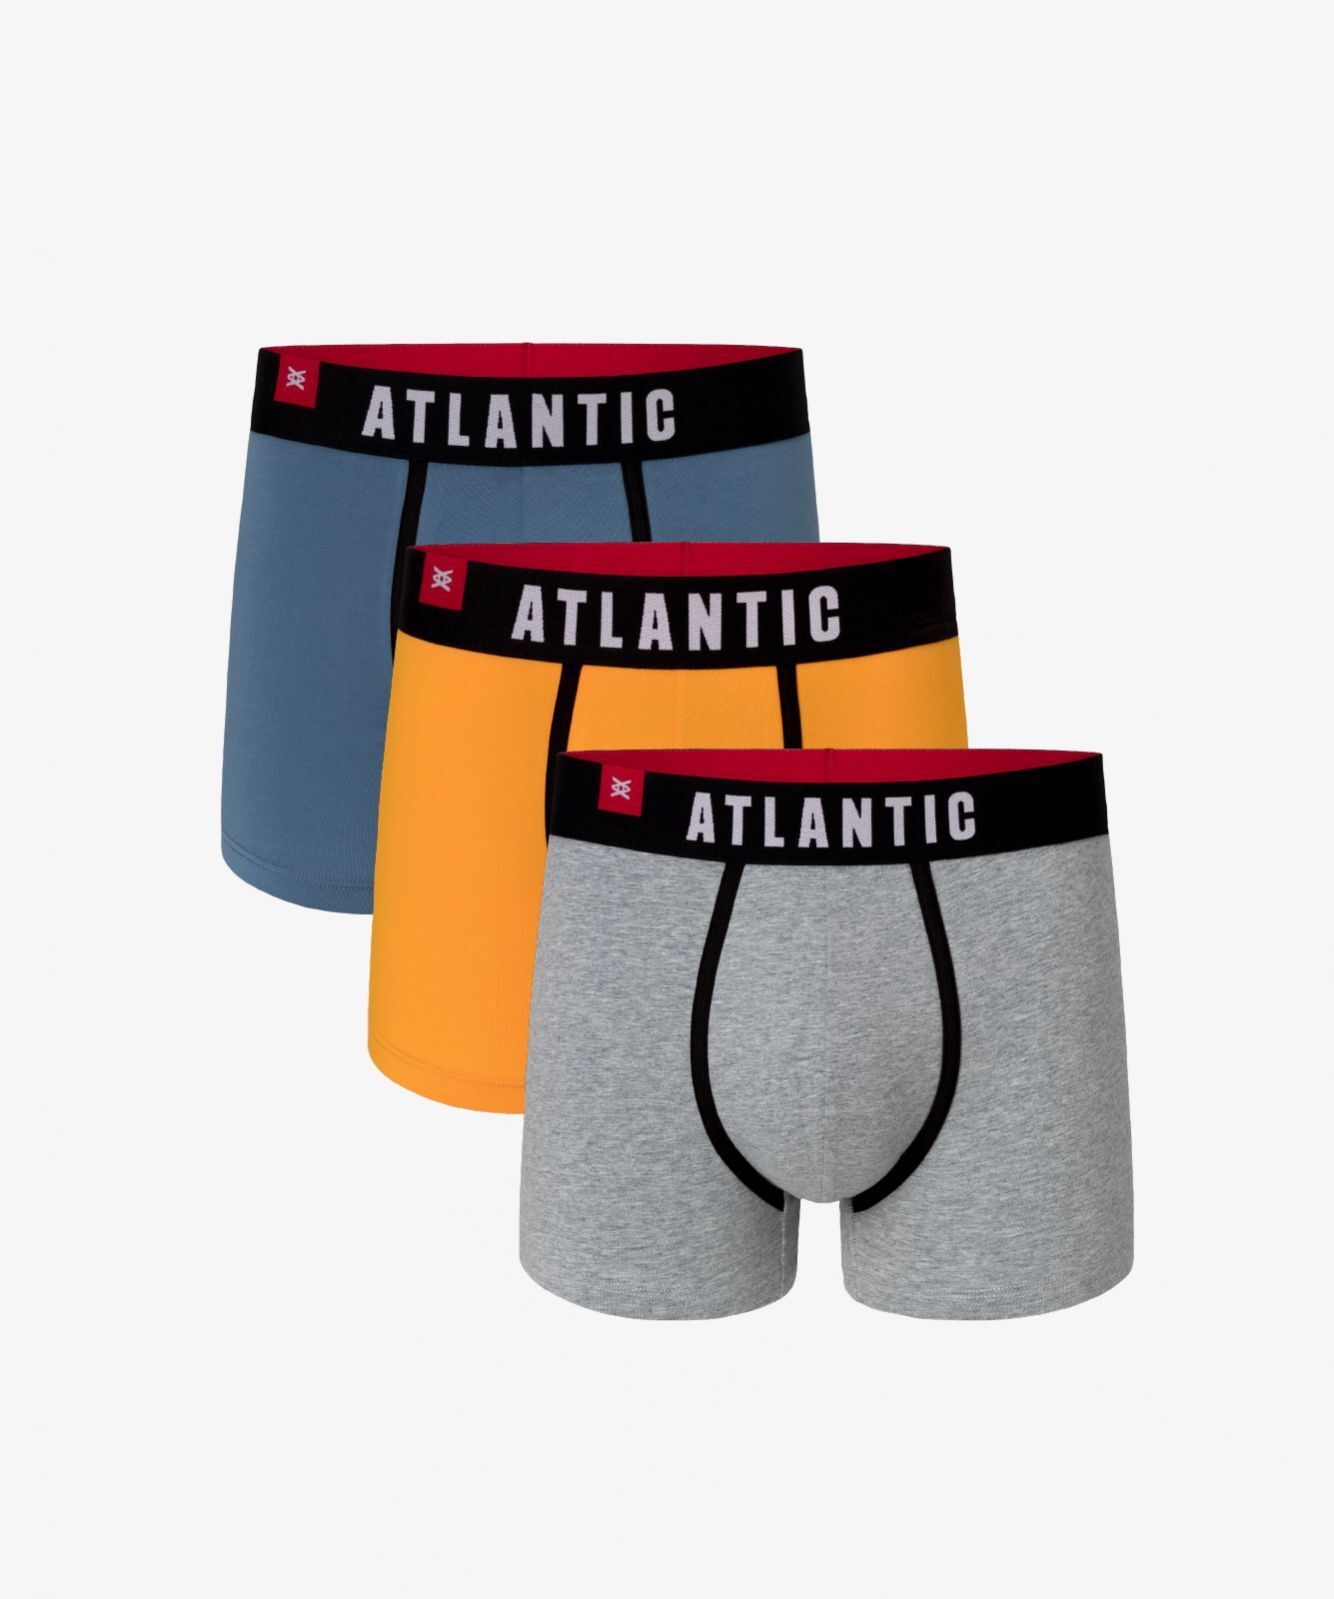 Мужские трусы шорты Atlantic, набор из 3 шт., хлопок, деним + желтые + серый меланж, 3MH-014